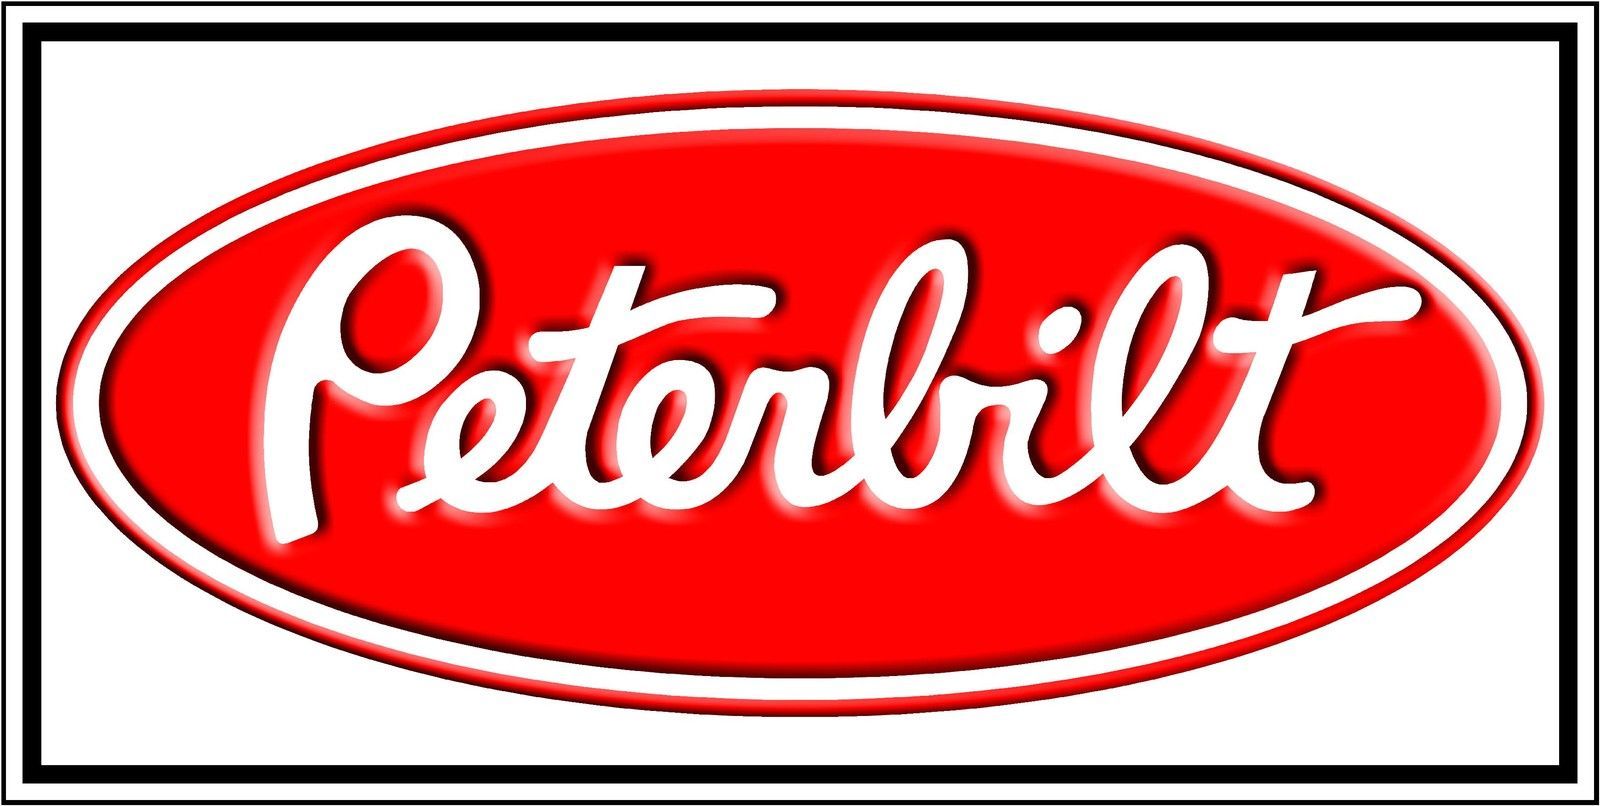 Peterbilt Truck Banner, Huge 2' x 4' High Quality Sign Banner Flag. Peterbilt, Peterbilt trucks, Motor logo